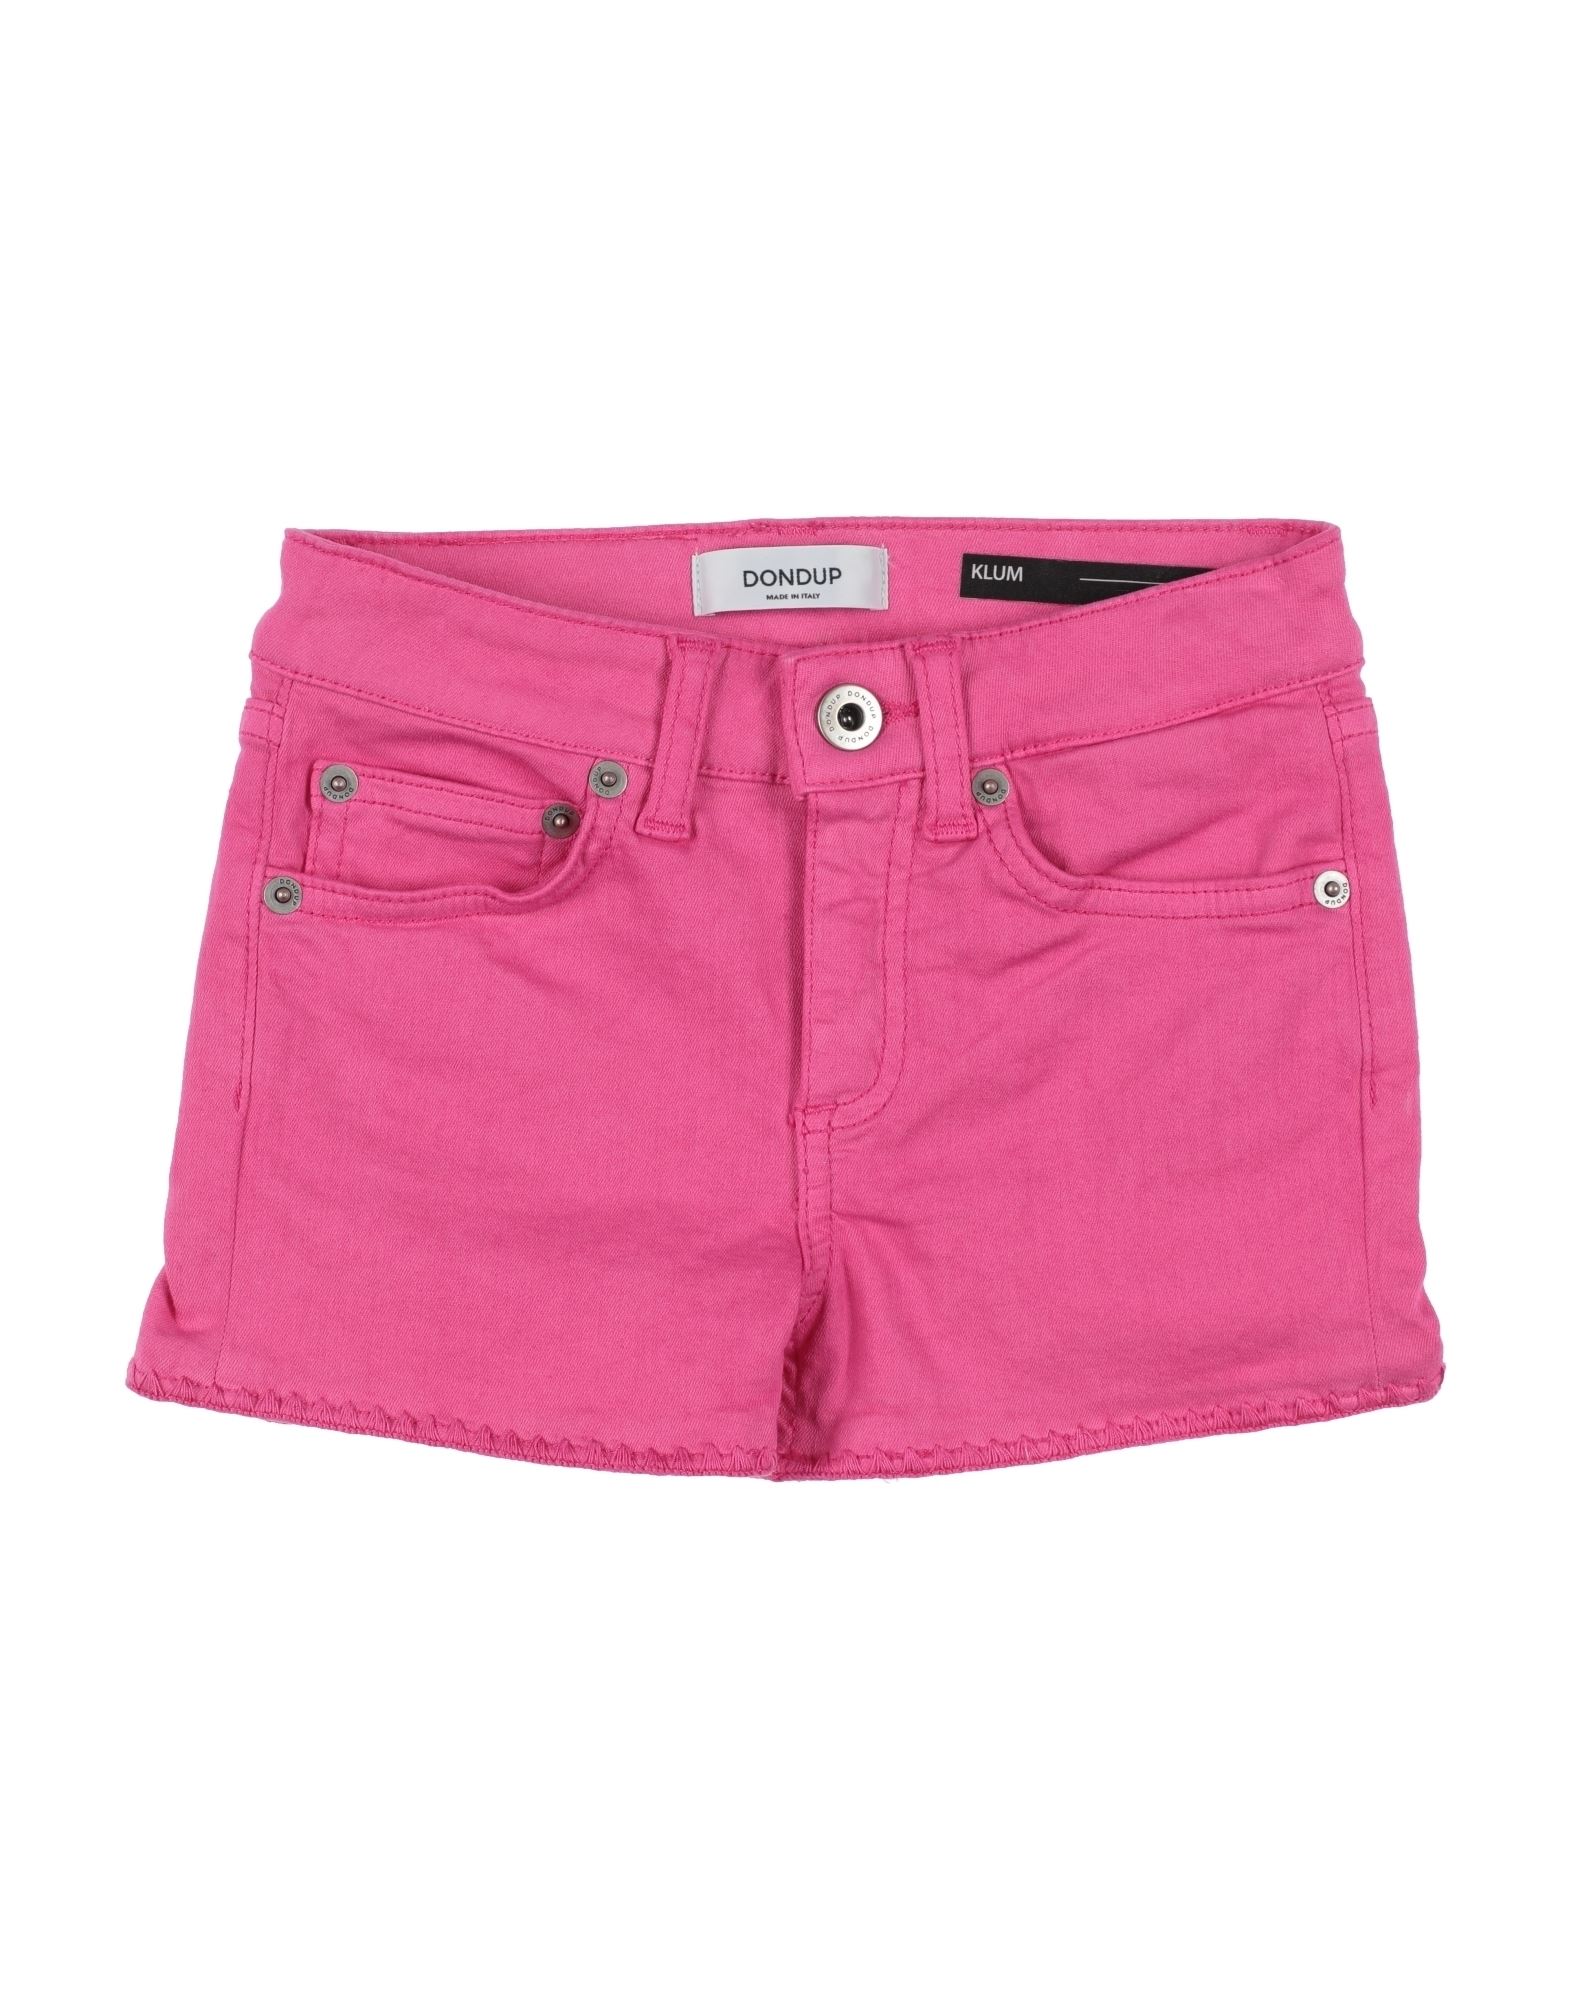 Dondup Kids' Denim Shorts In Pink